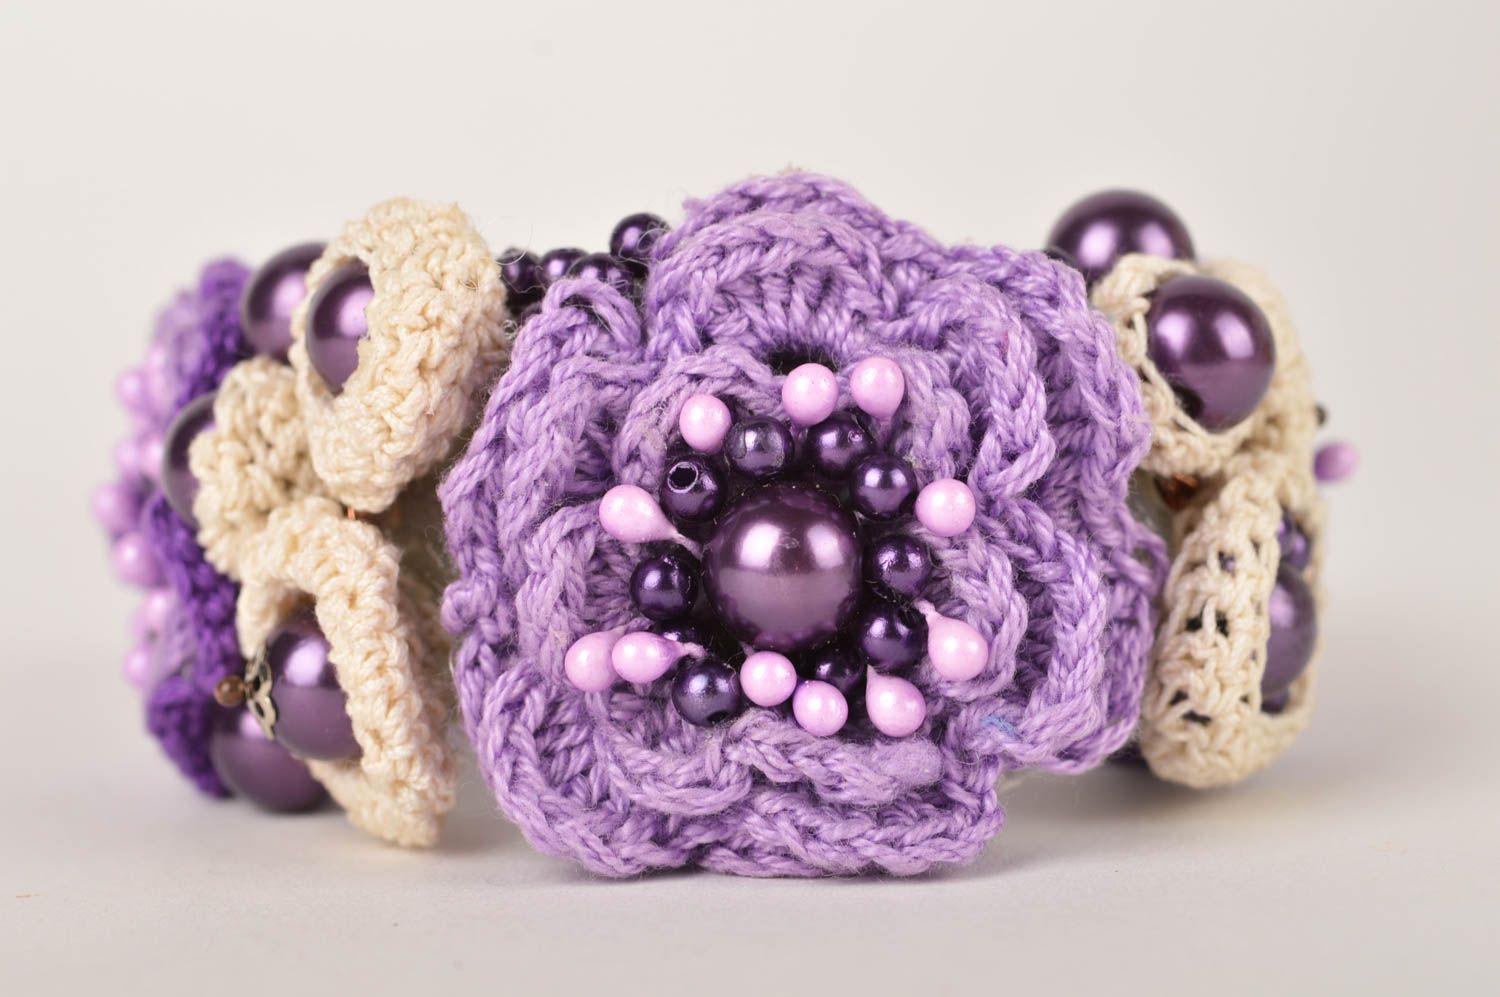 Unusual handmade wrist bracelet designs flower bracelet crochet ideas gift ideas photo 4